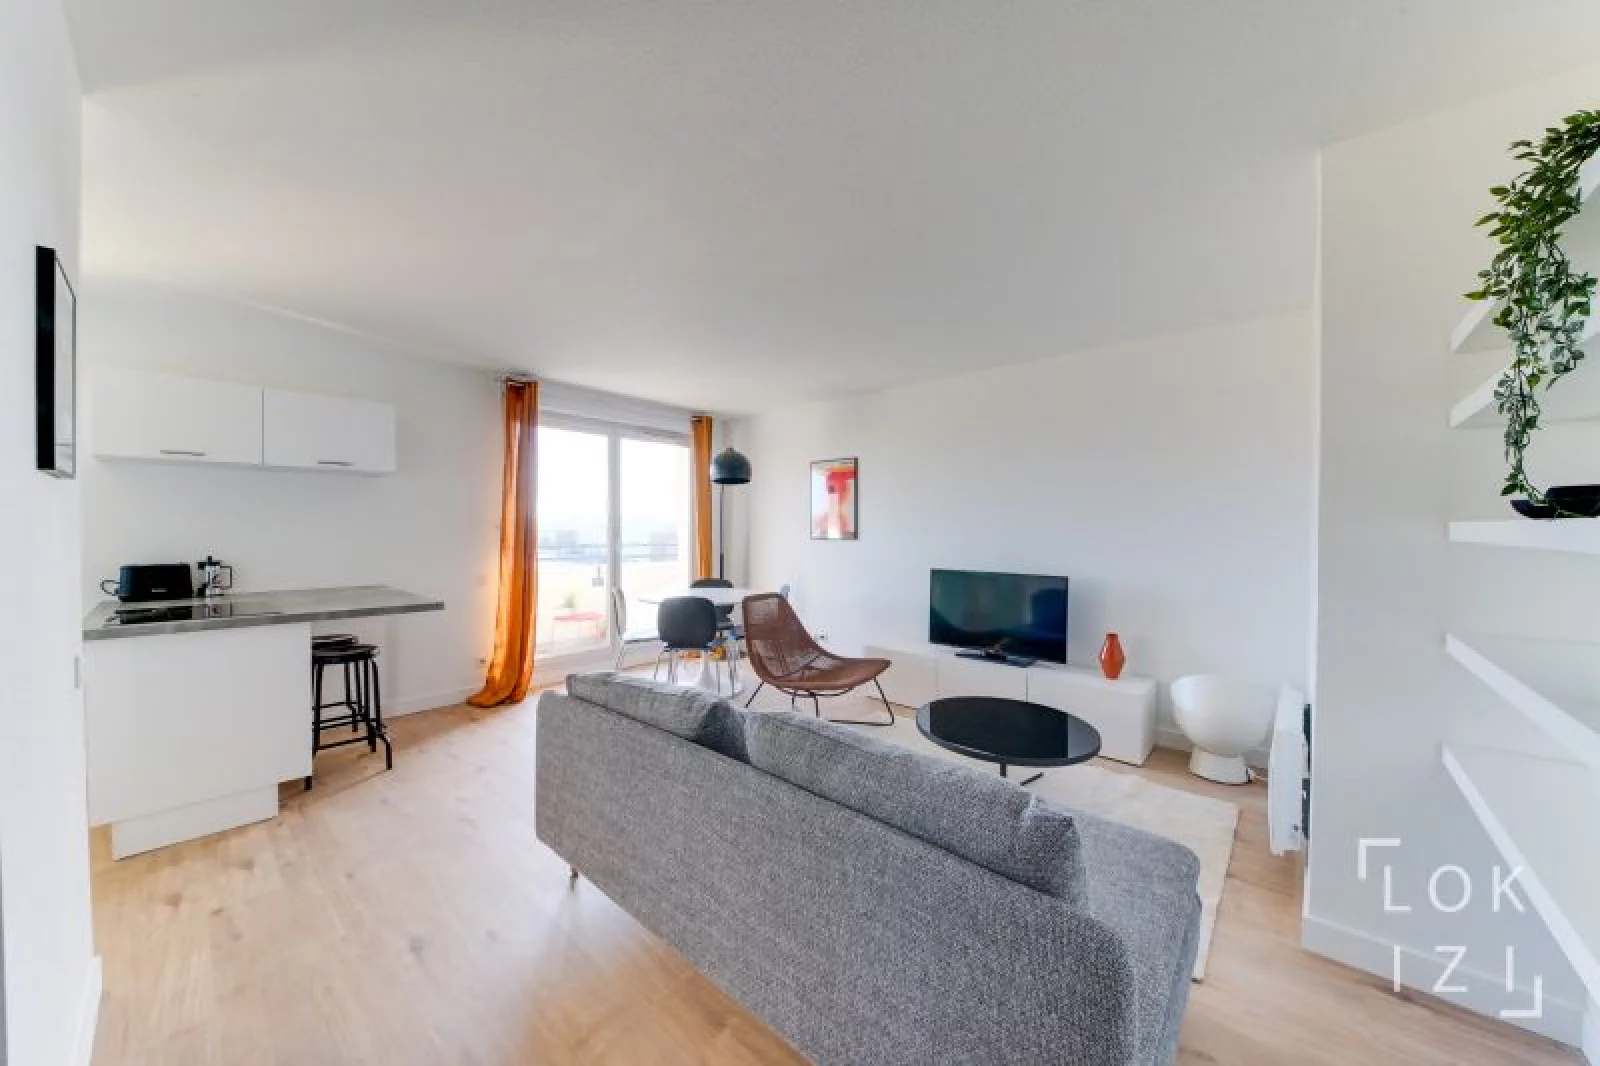 Location appartement meublé 2 pièces 50m² (Bordeaux - Ravezies)